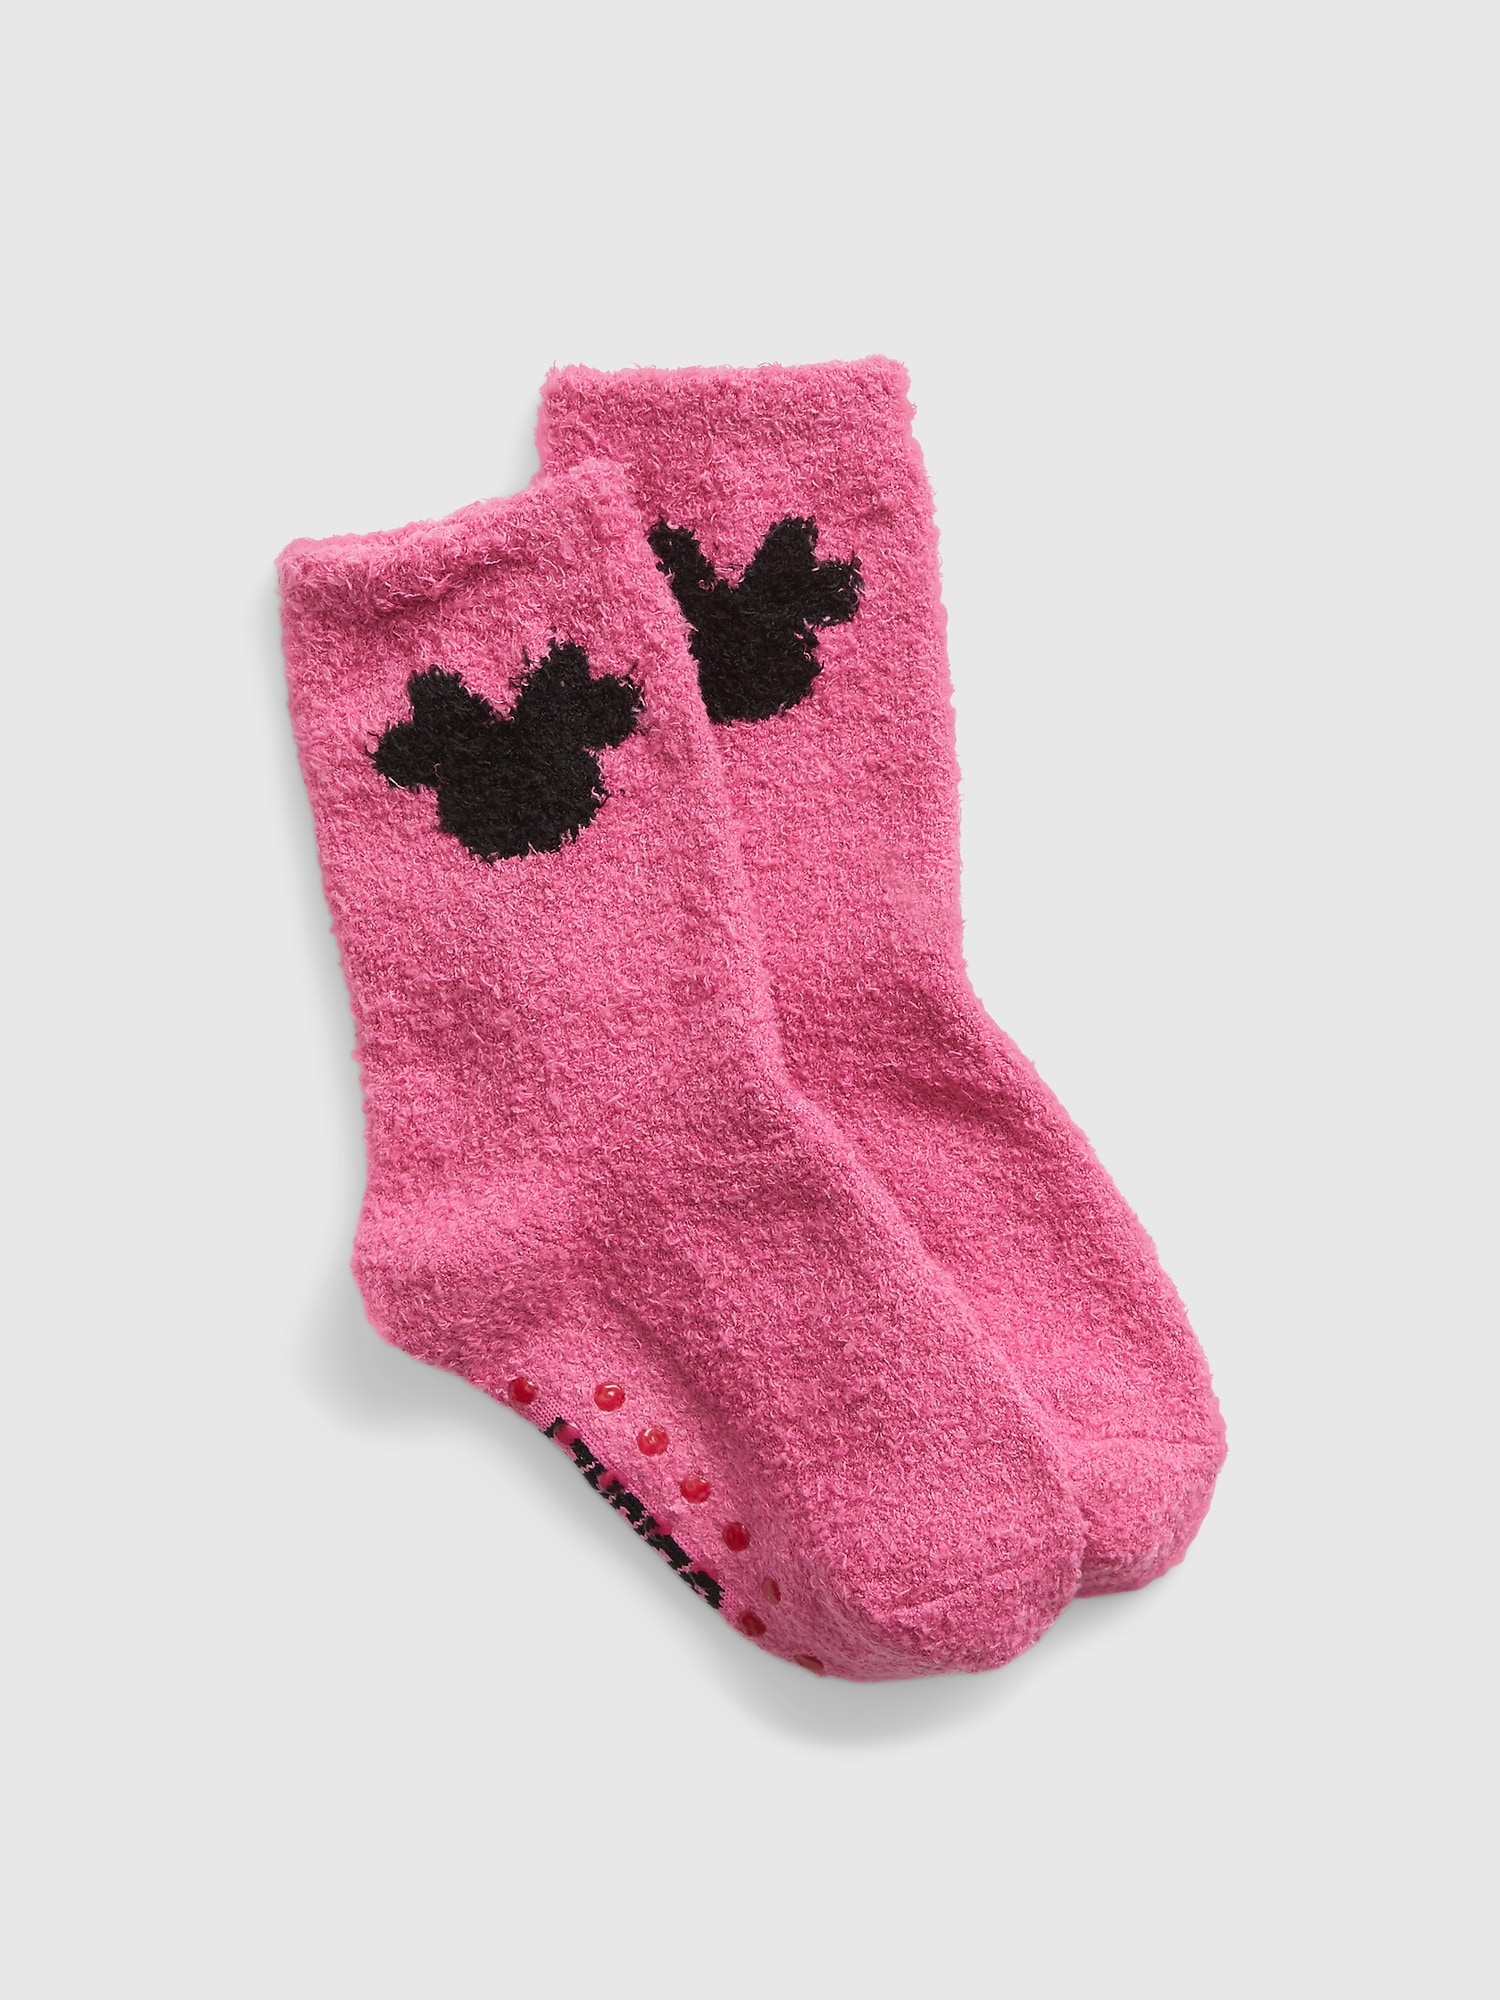 GapKids | Disney Recycled Cozy Minnie Mouse Socks | Gap